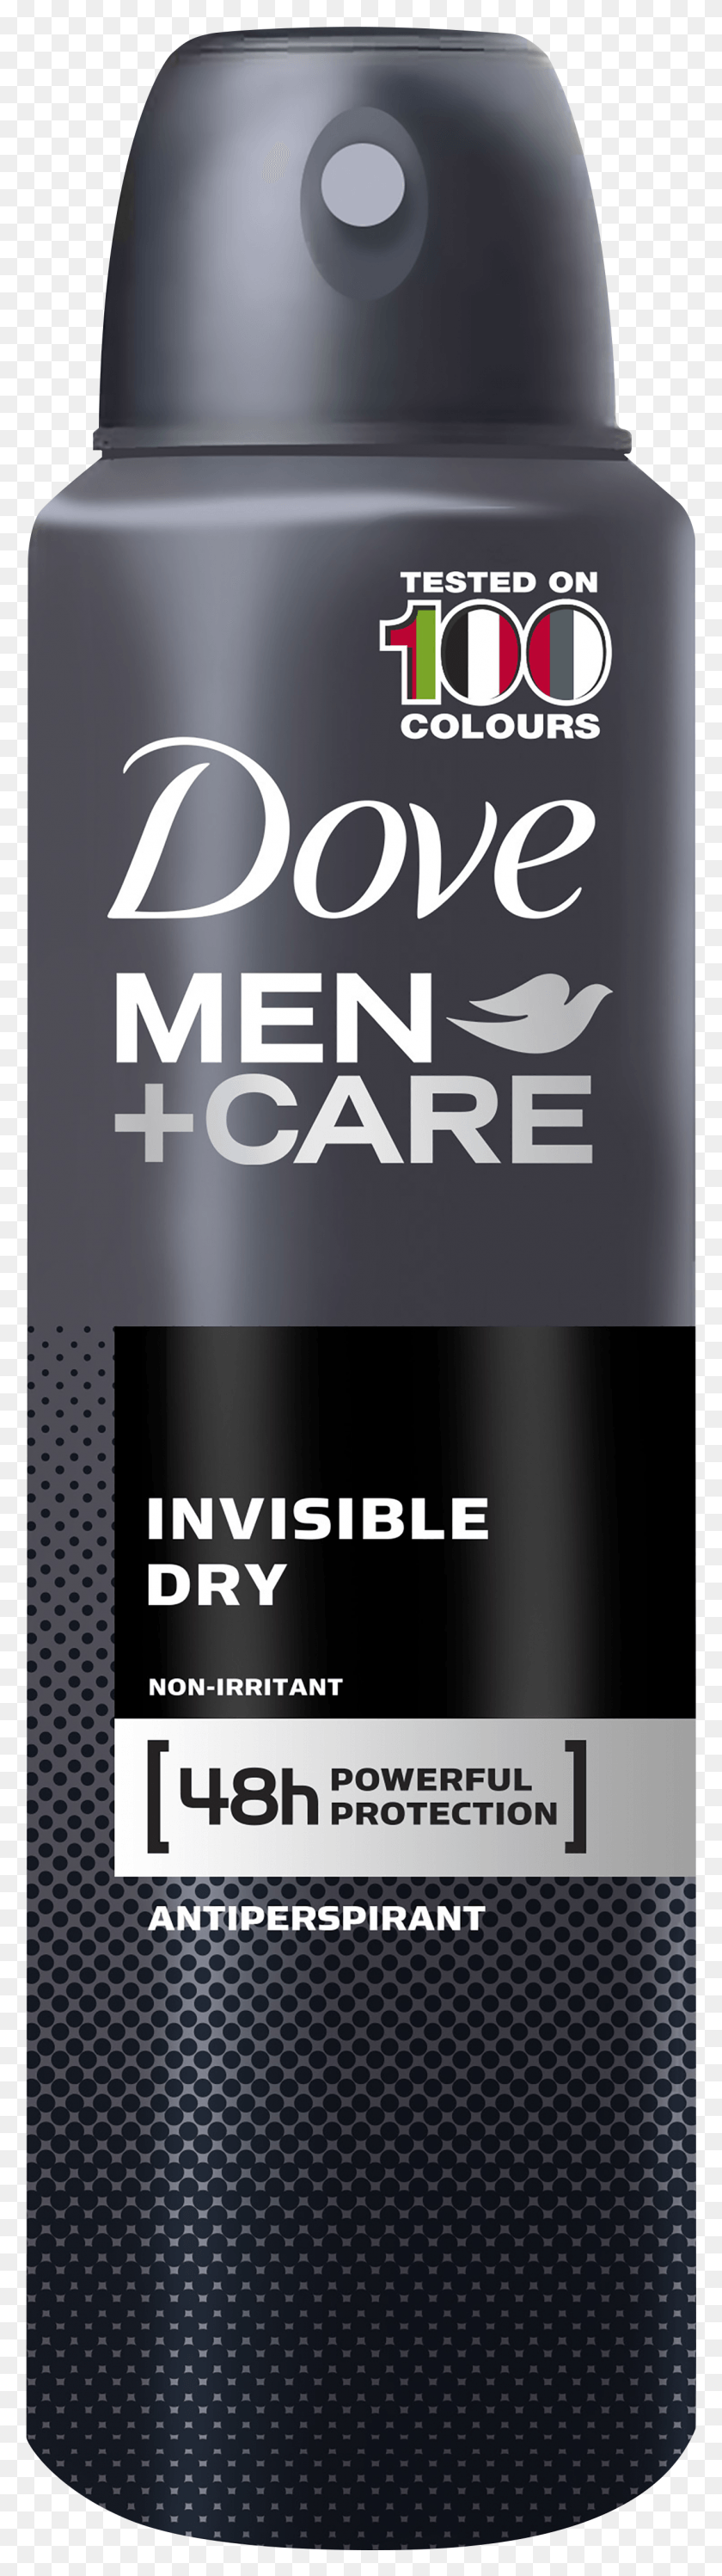 1266x4765 Dove Men Care Invisible Spray, Aluminio, Lata, Lata Hd Png